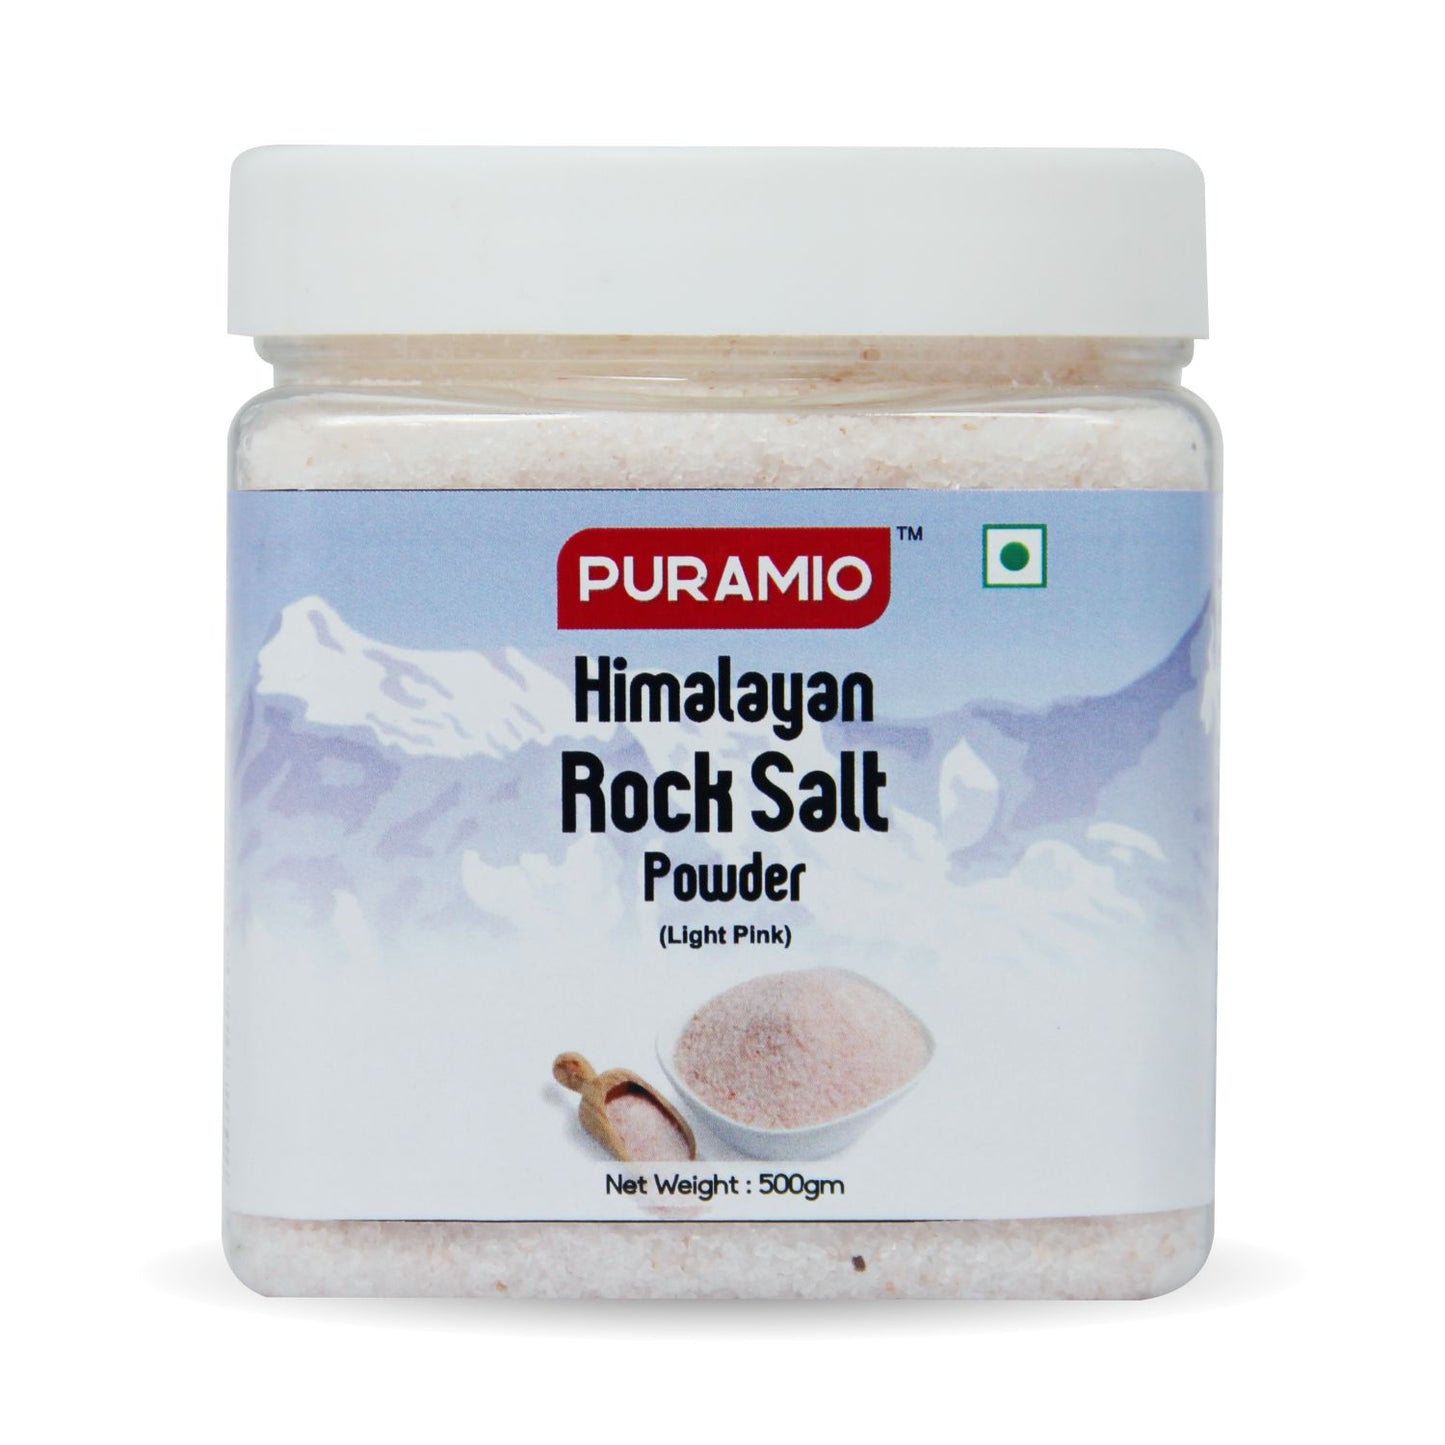 Puramio Himalayan Pink Rock Salt Powder - Light